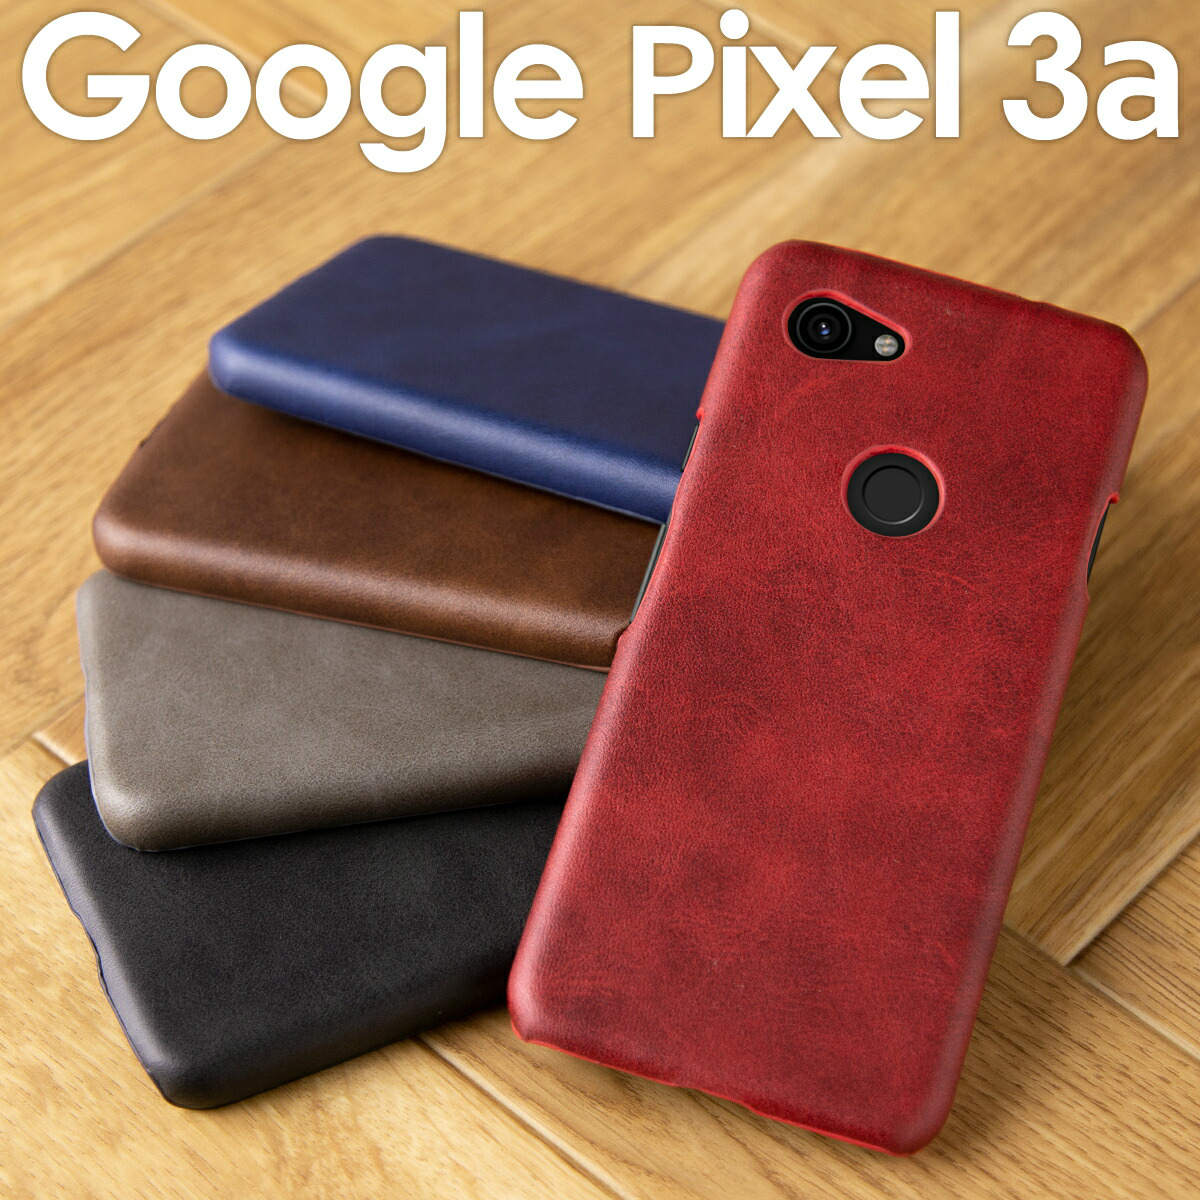 【最大30 OFFクーポン】 Pixel3aケース Pixel3a Pixel3a ケース かわいい スマホケース 韓国 カバー グーグル ピクセル3 レザーハードケース Google グーグル スマホ ケース カバー レザー メンズ ブランド ハードケース ピクセル ヴィーガンレザー 携帯ケース 携帯カバー